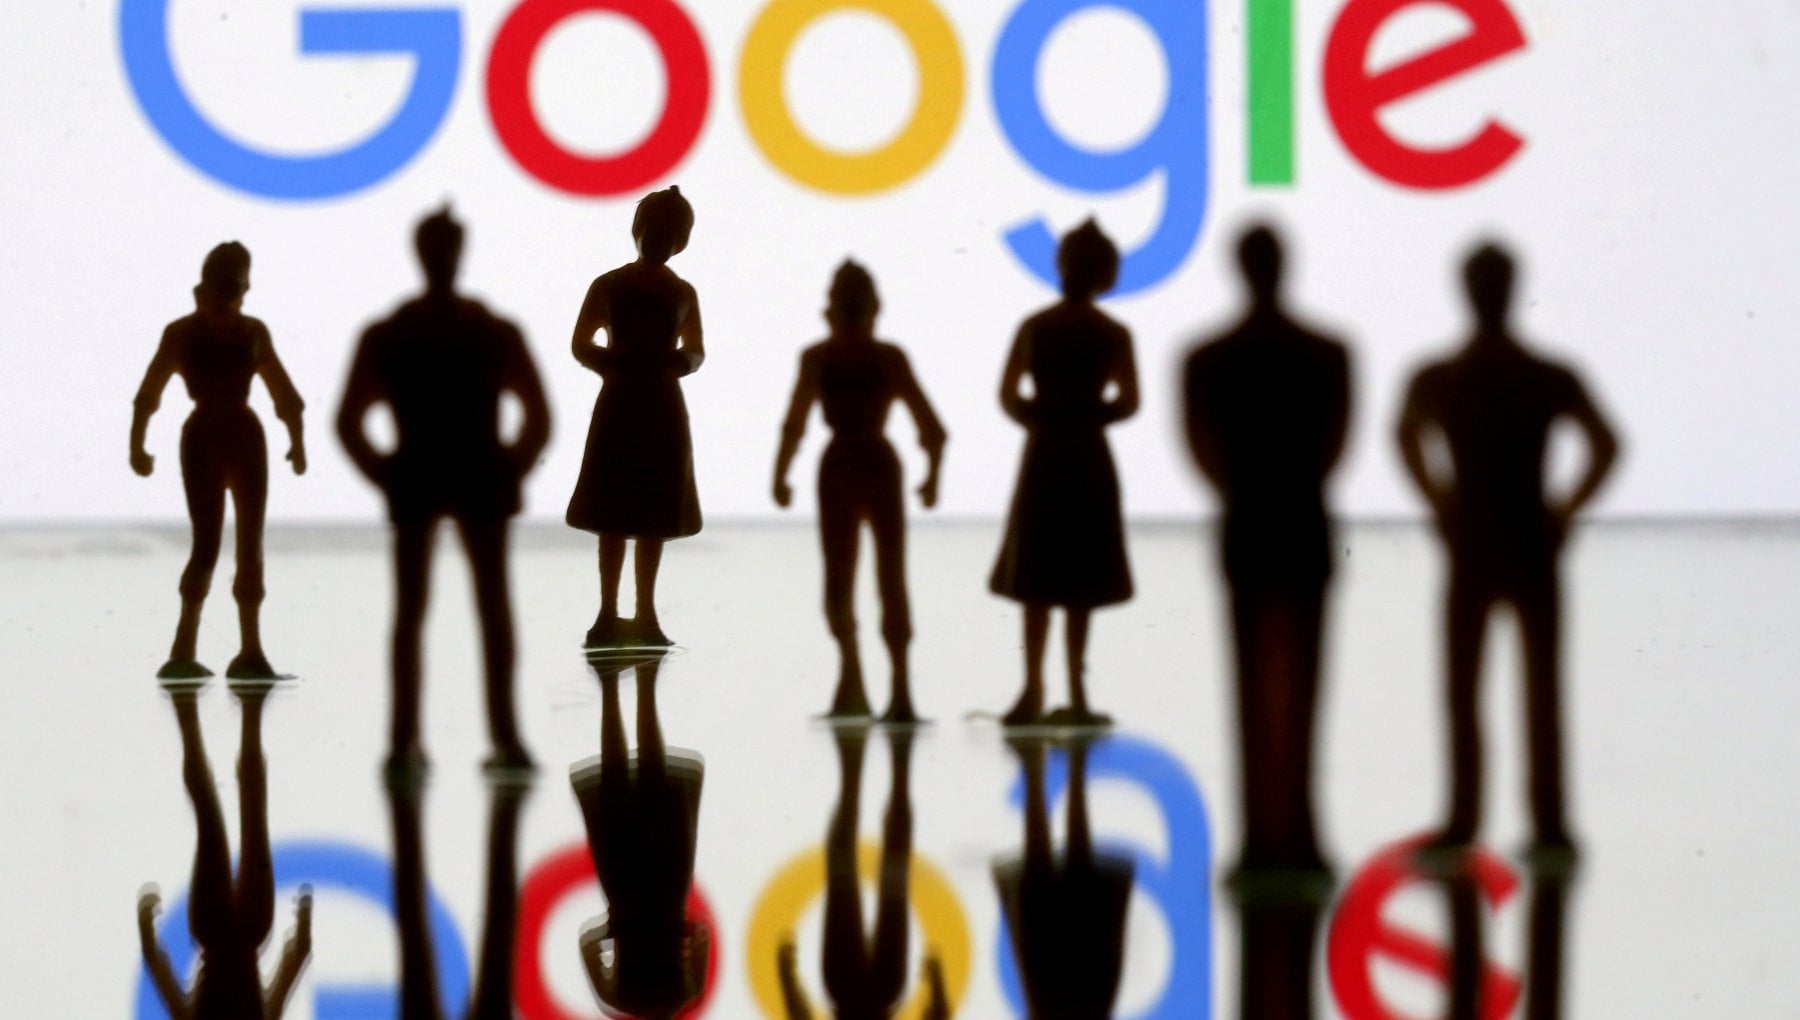 Google, nasce il sindacato dei lavoratori del gigante tecnologico. E’ il primo nella Silicon Valley